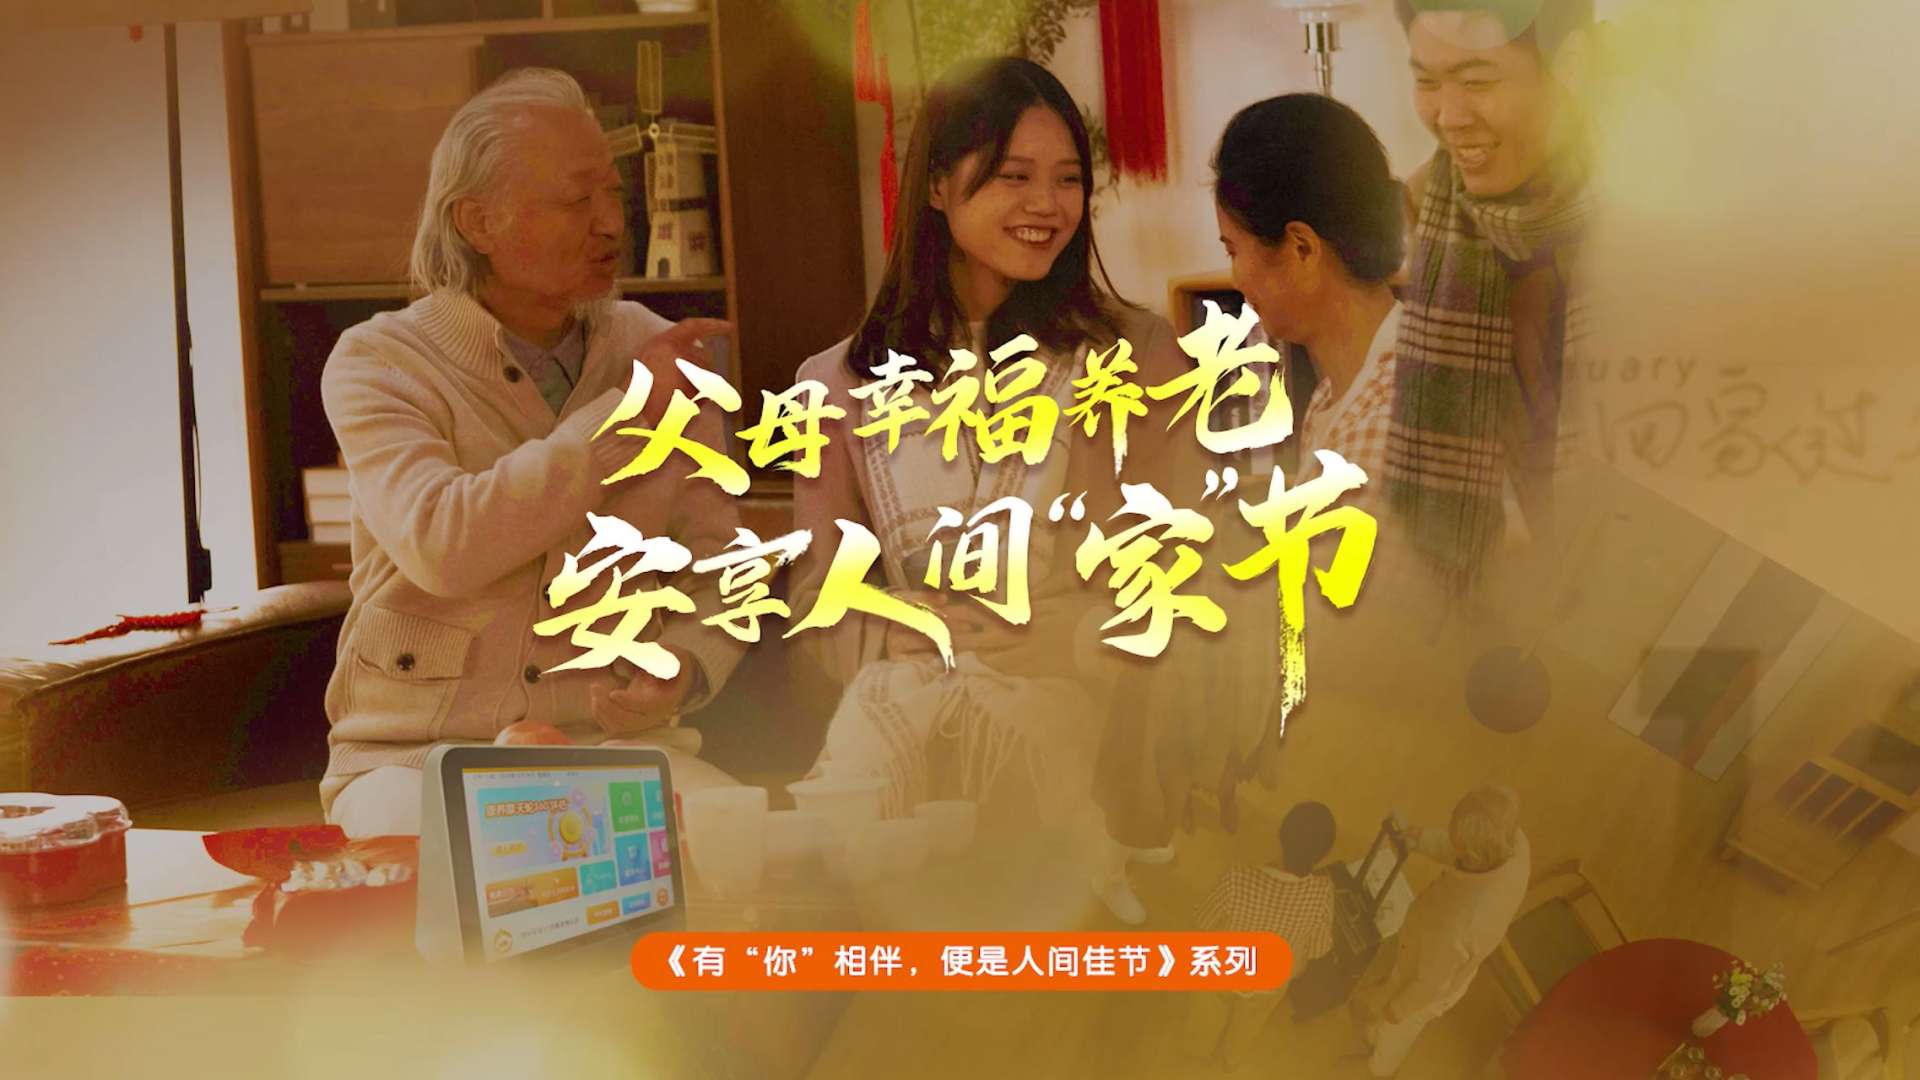 平安居家养老春节系列影片 《有你相伴便是人间佳节》